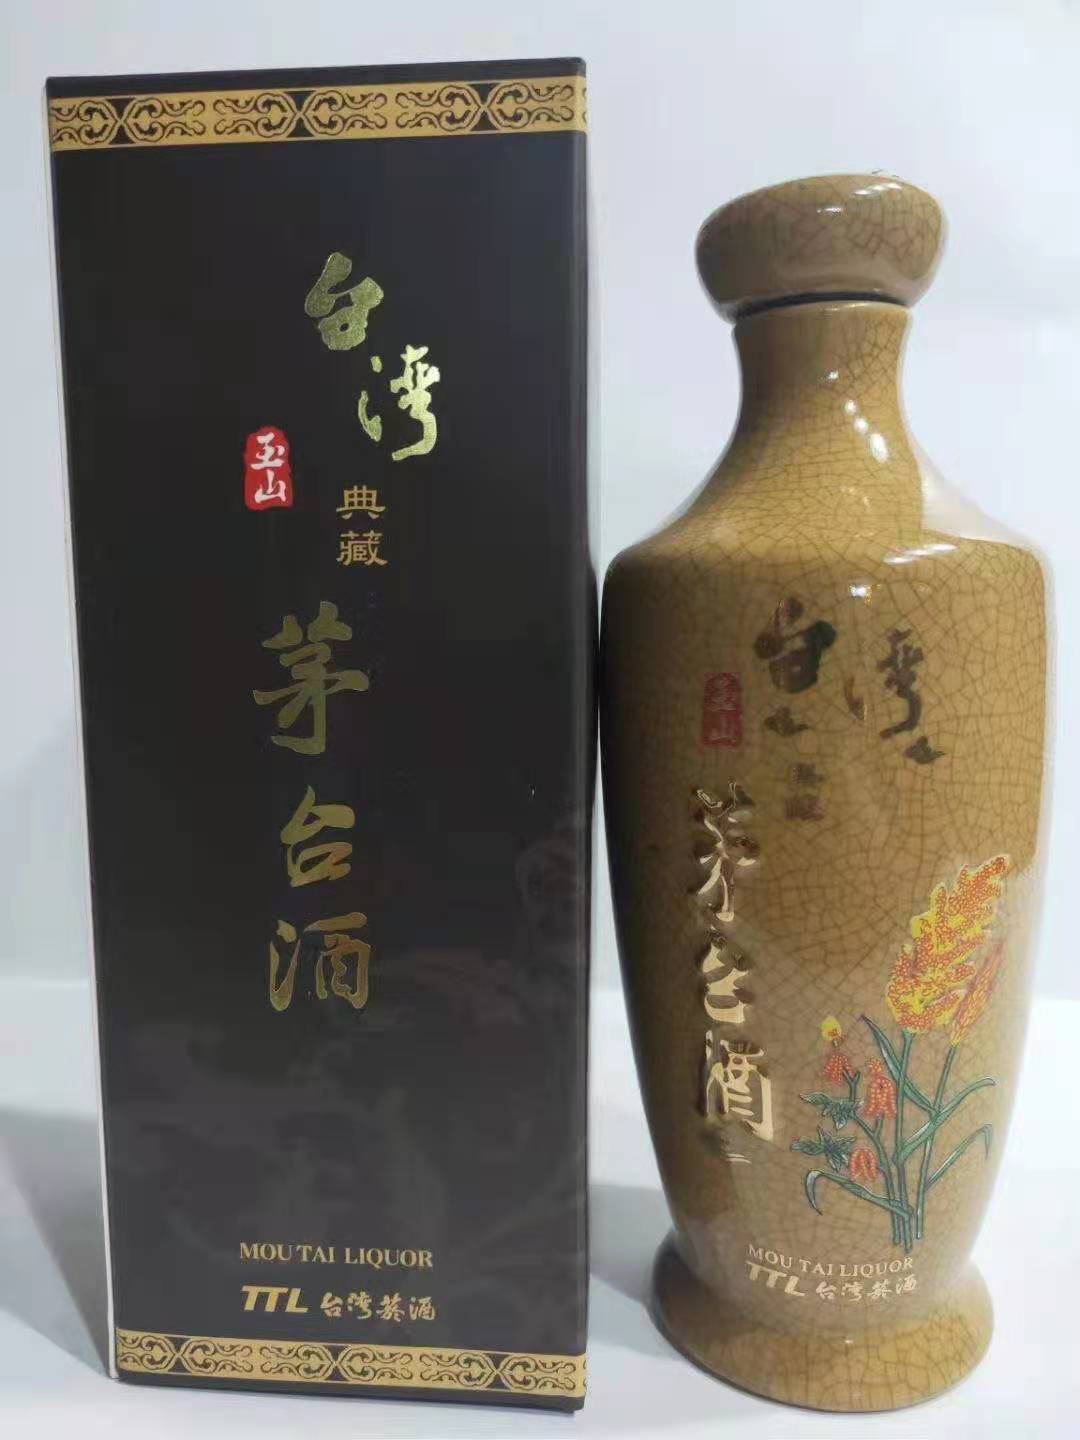 酱香型53度0.5公升TTL菸酒中国台湾玉山典藏**高粱酒